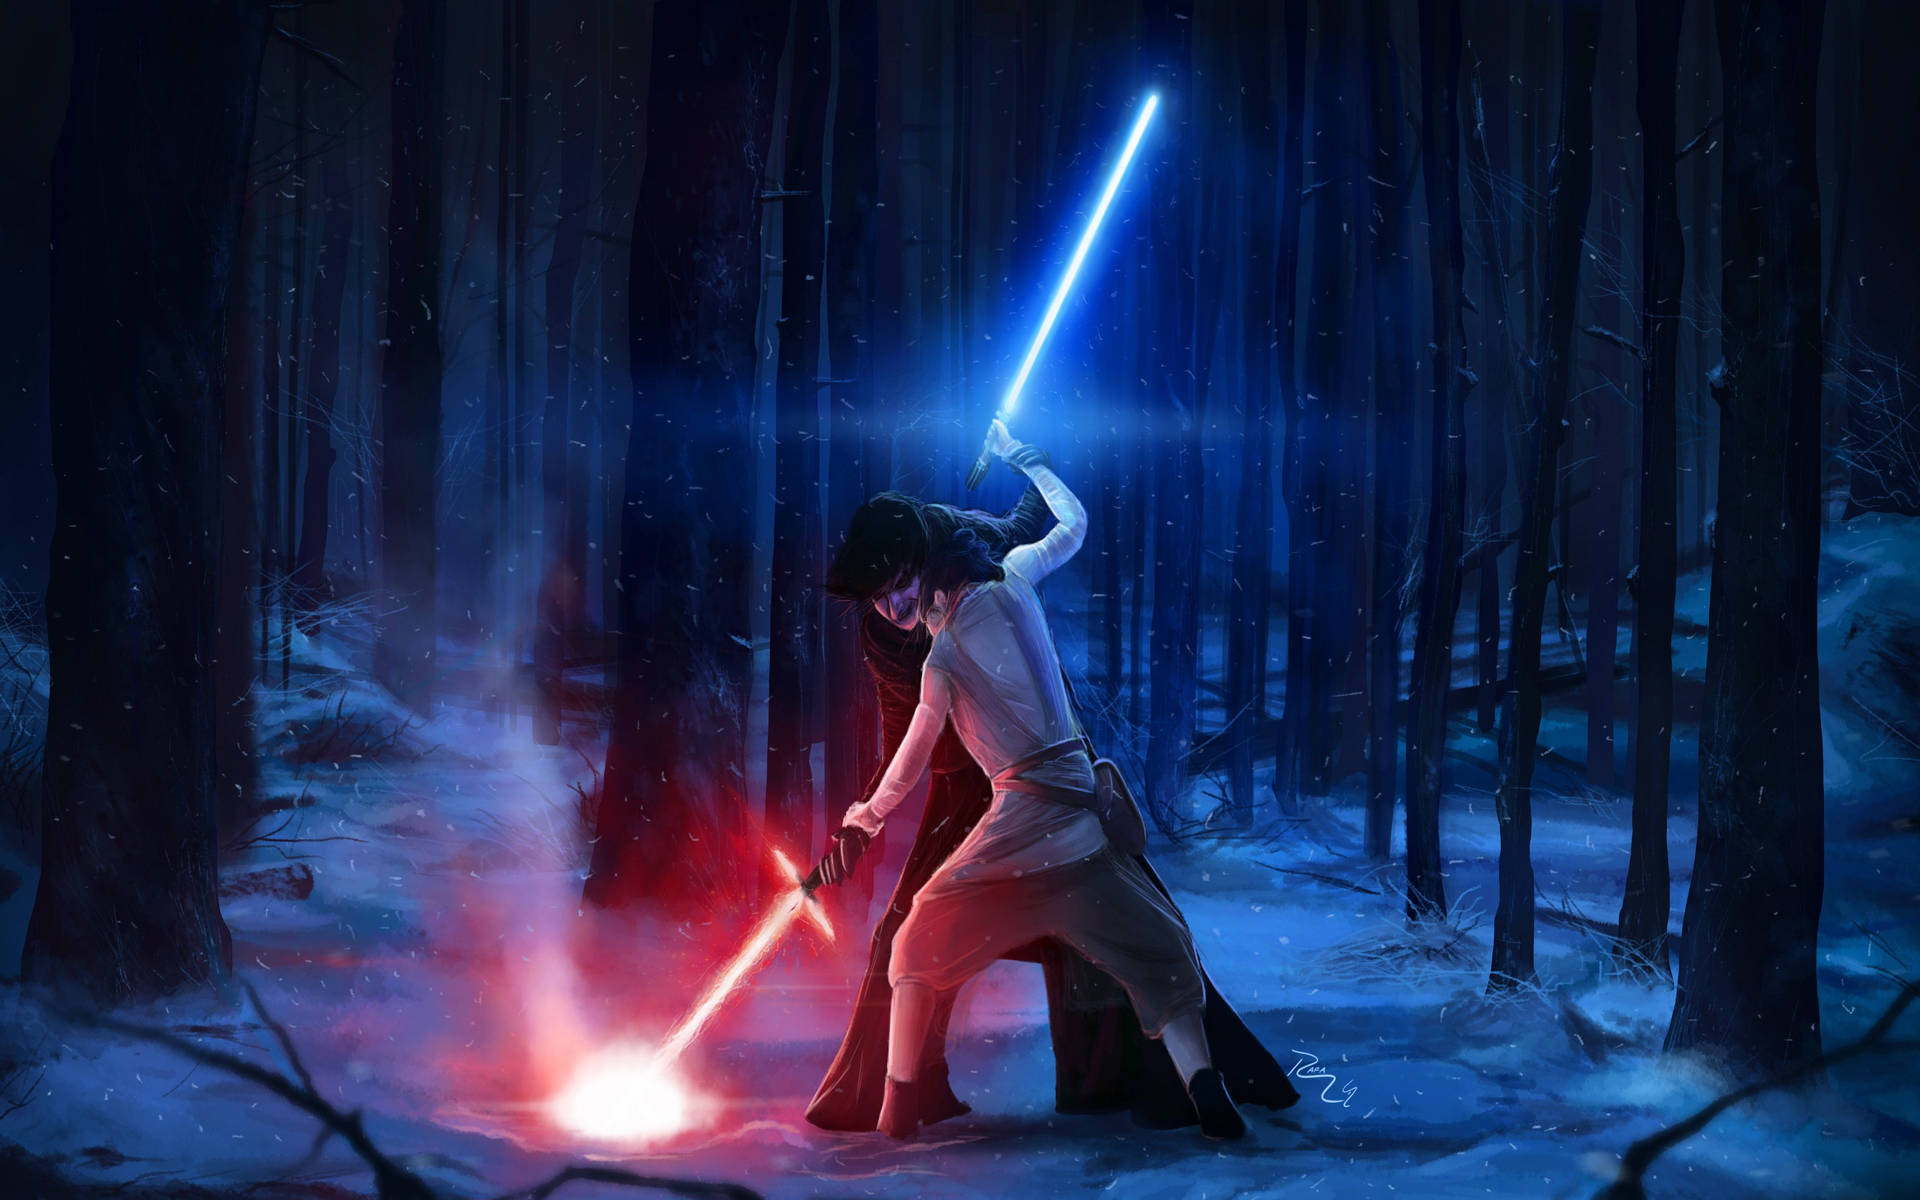 Kylo Ren Versus Rey Animated Background